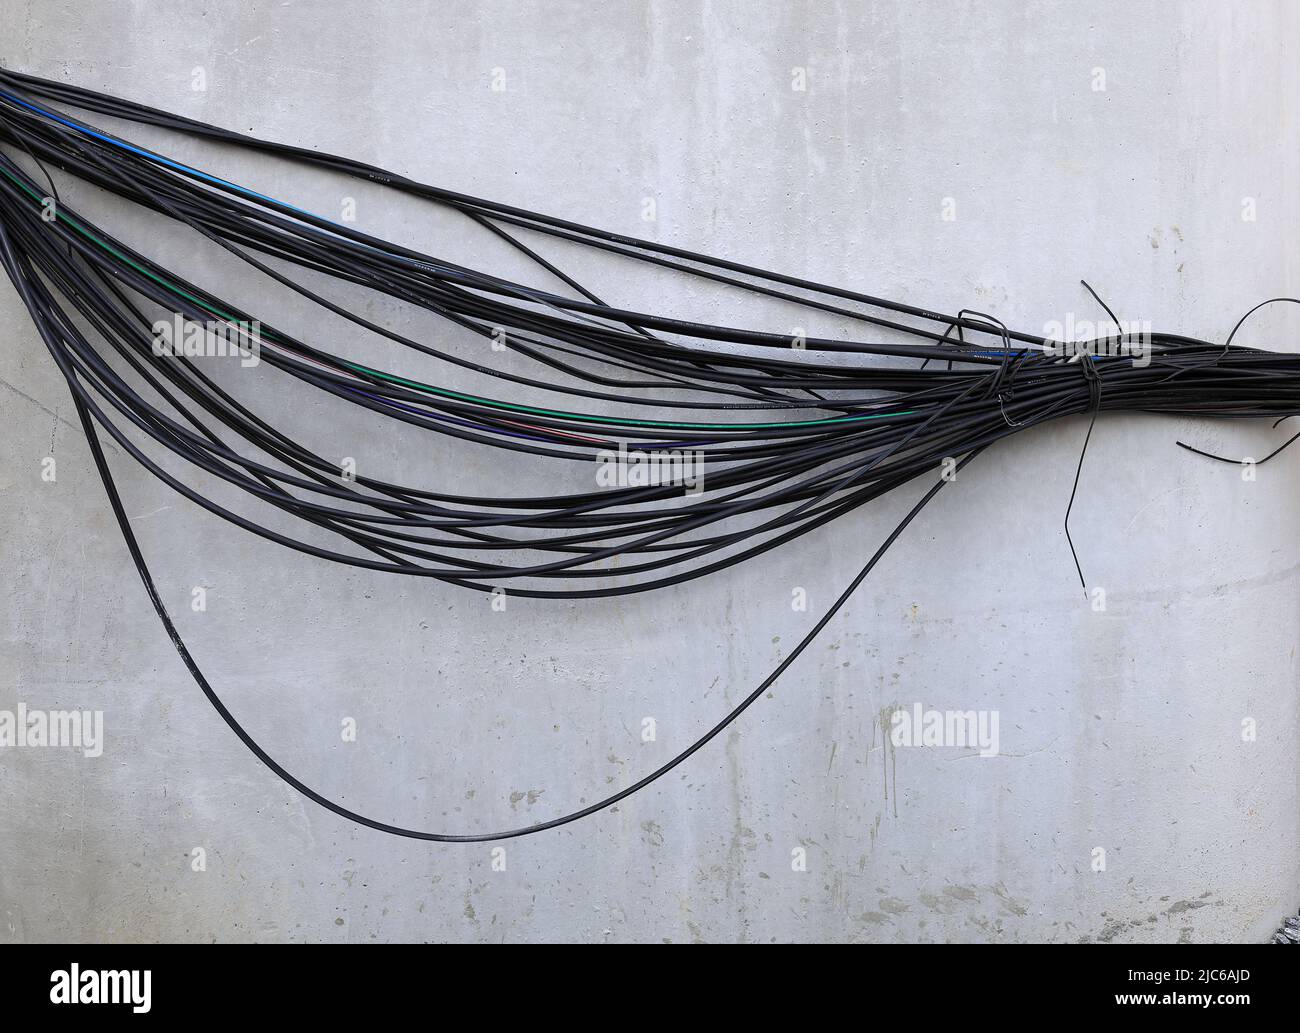 Un montón de cables eléctricos y de comunicación, cables en el polo, el caos de cables y cables en un polo eléctrico. Foto de stock